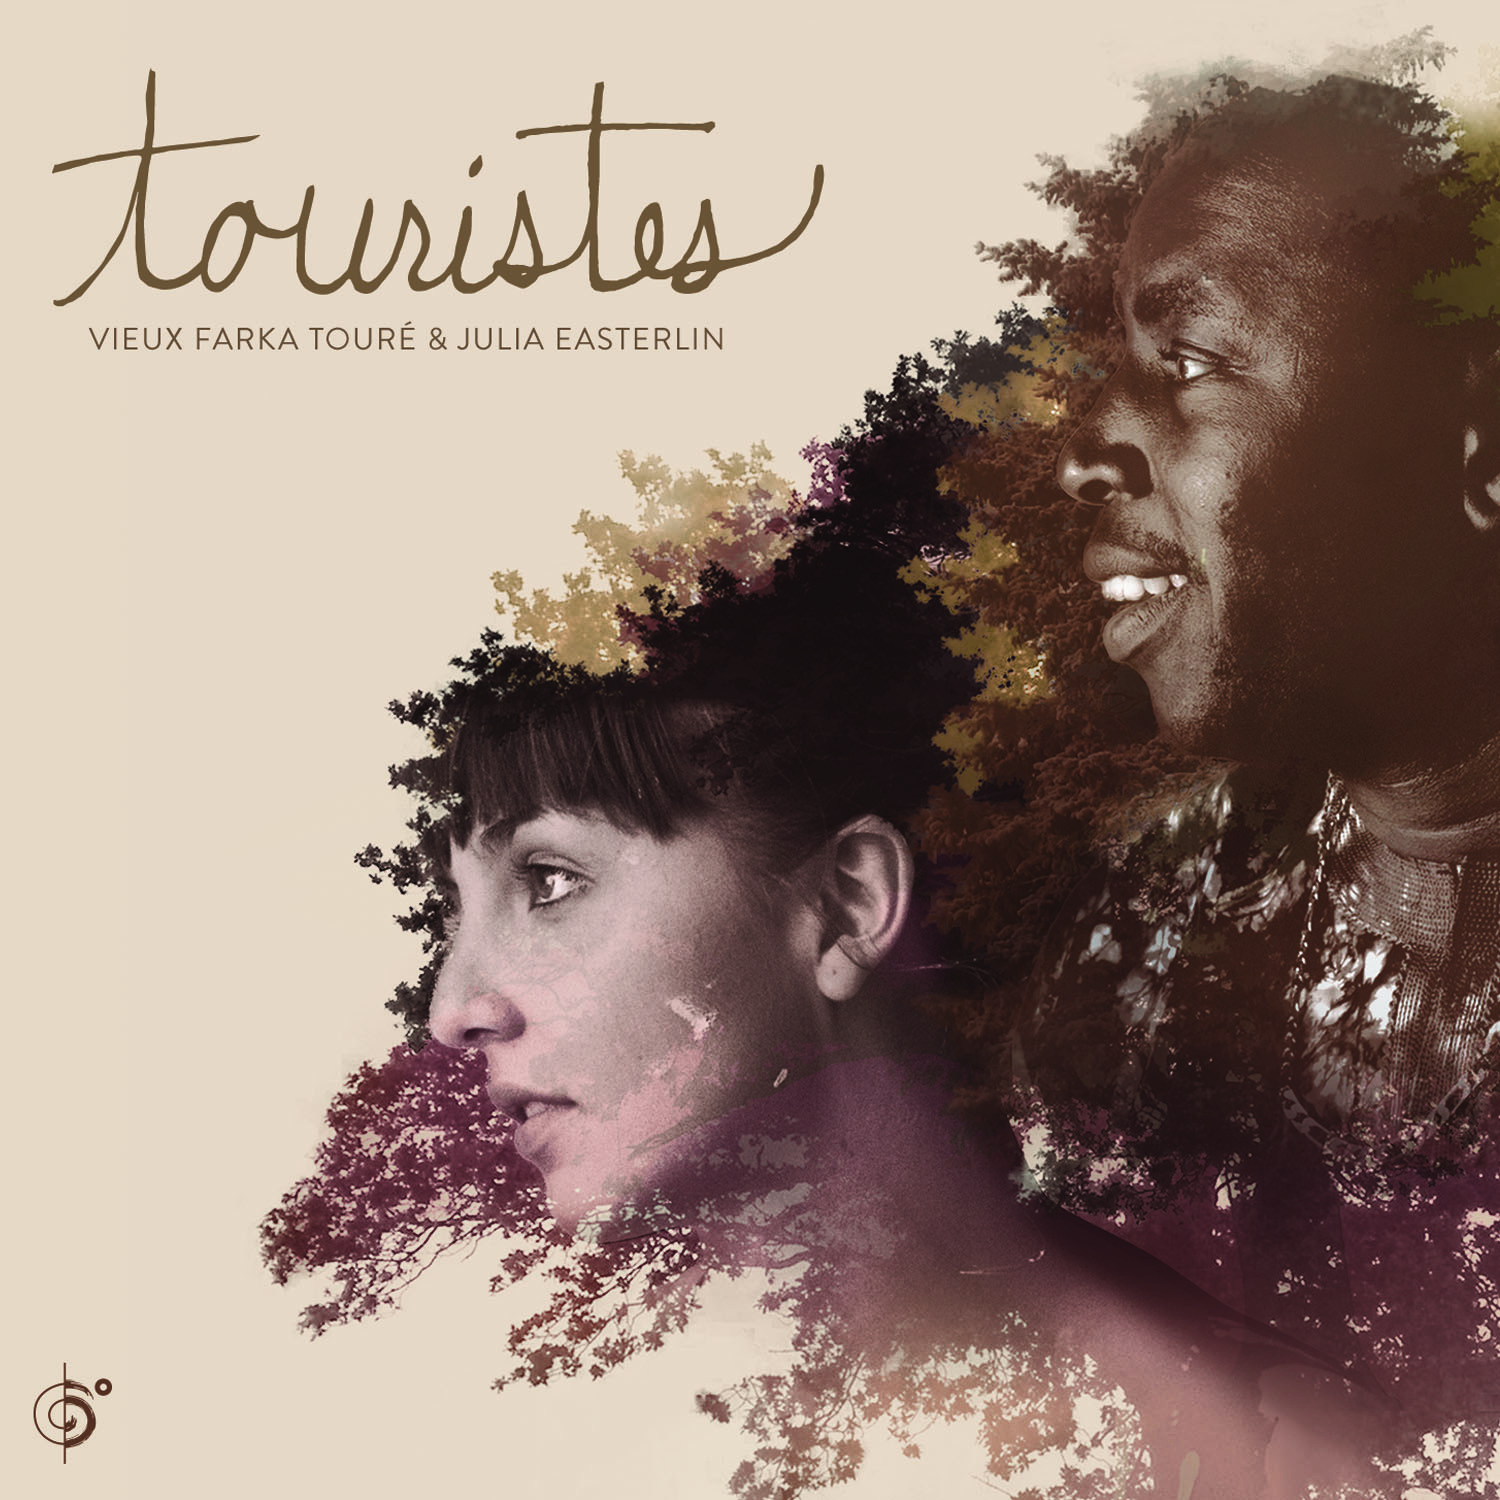 Vieux Farka Touré & Julia Easterlin – Touristes